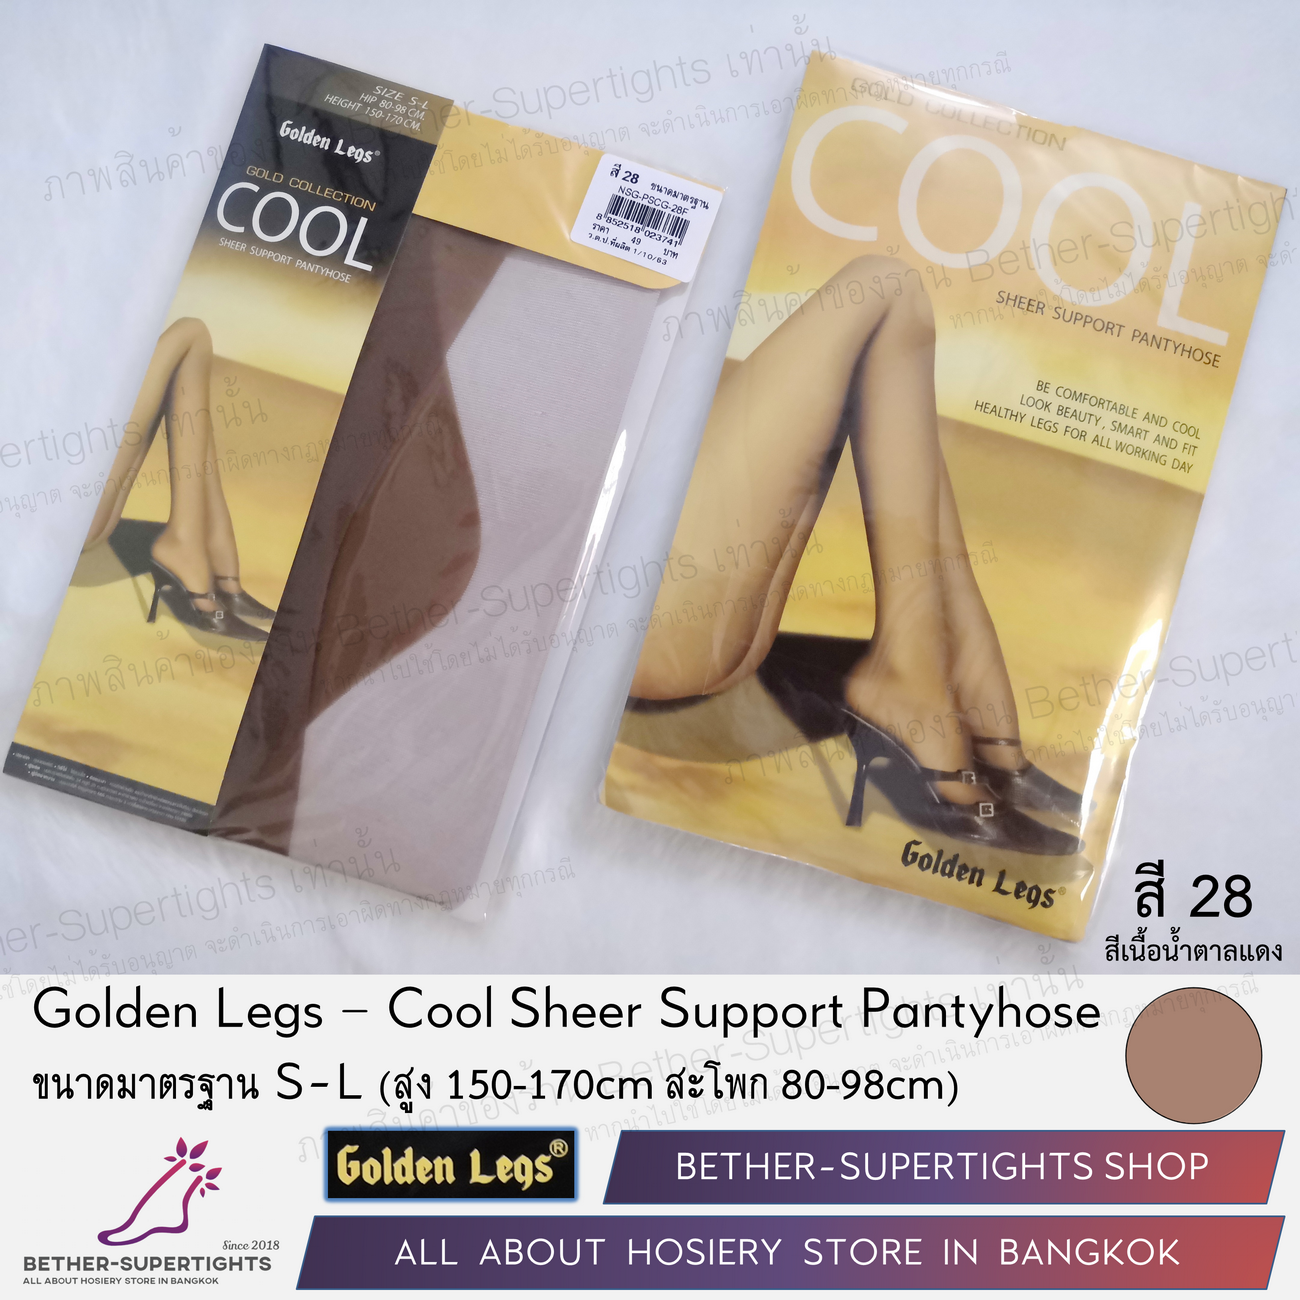 ถุงน่องเชียร์ซัพพอร์ท Golden Legs - Cool Support Pantyhose (1 คู่) - เครือเดียวกันกับเชอรีล่อน